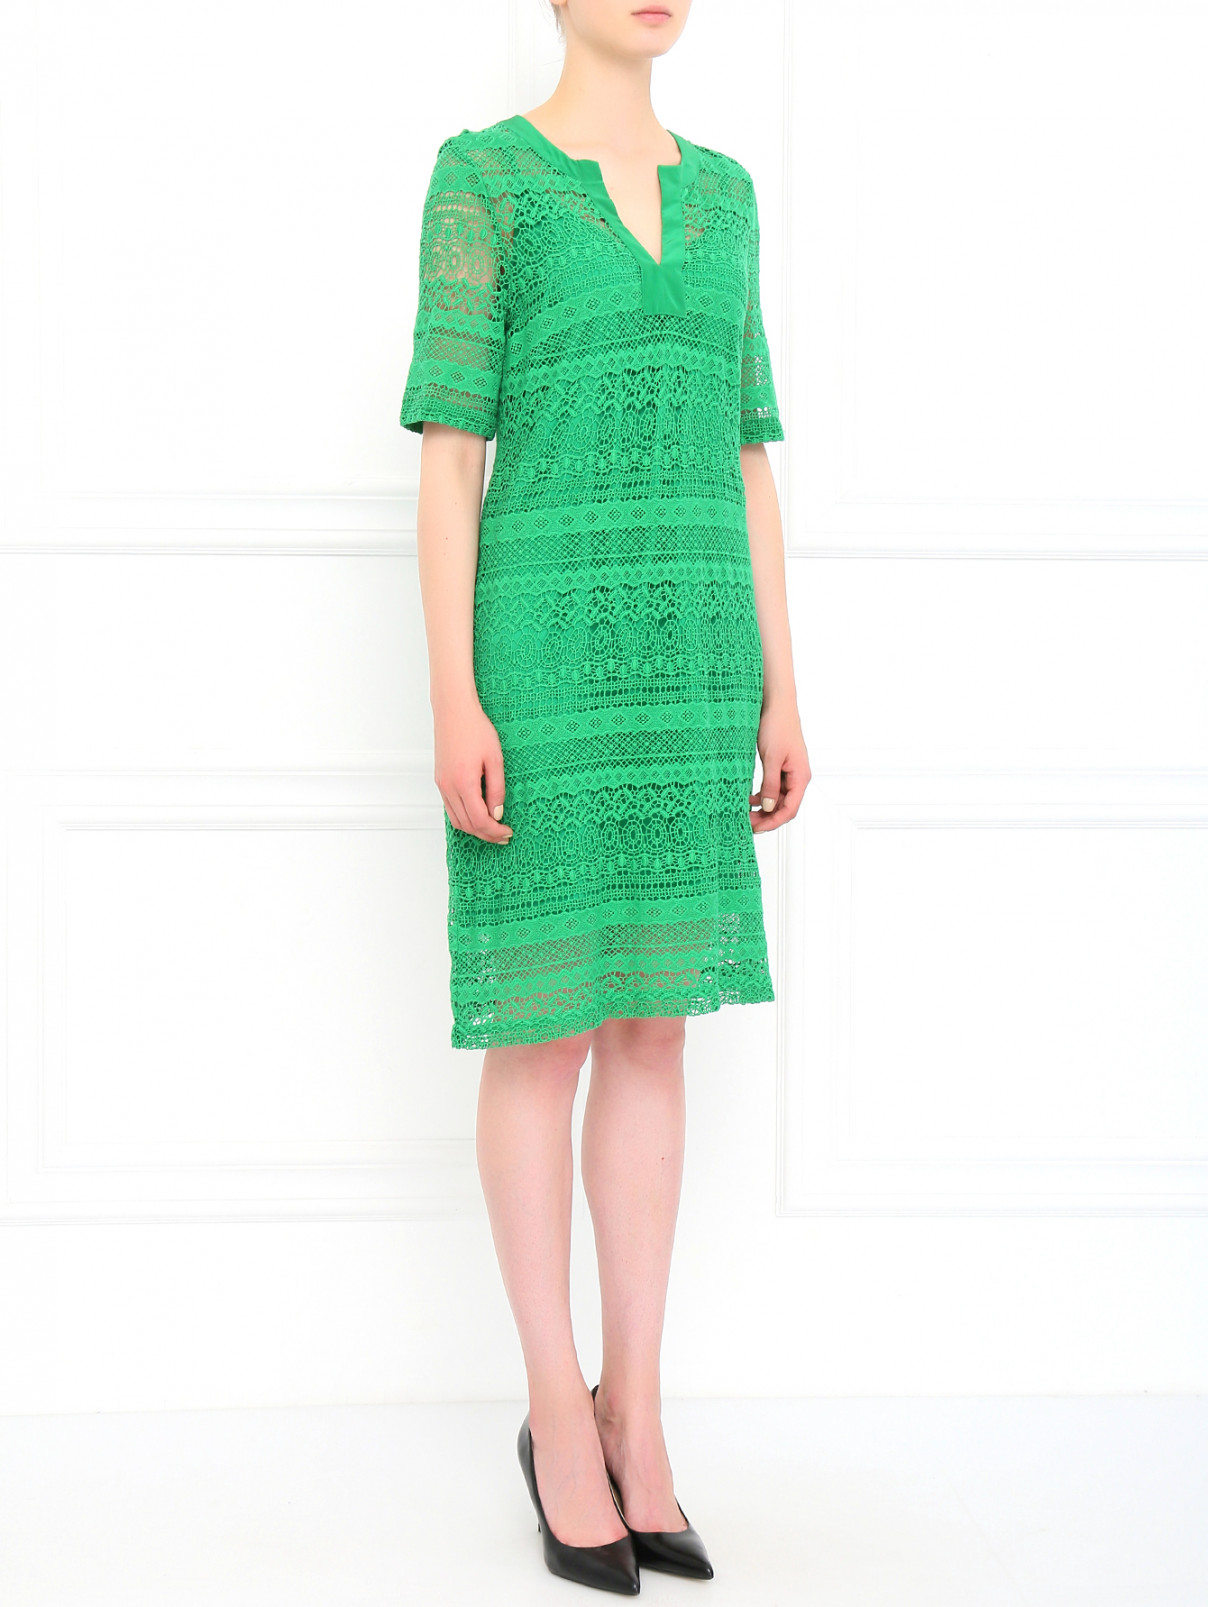 Платье из хлопка и шелка Collette Dinnigan  –  Модель Общий вид  – Цвет:  Зеленый